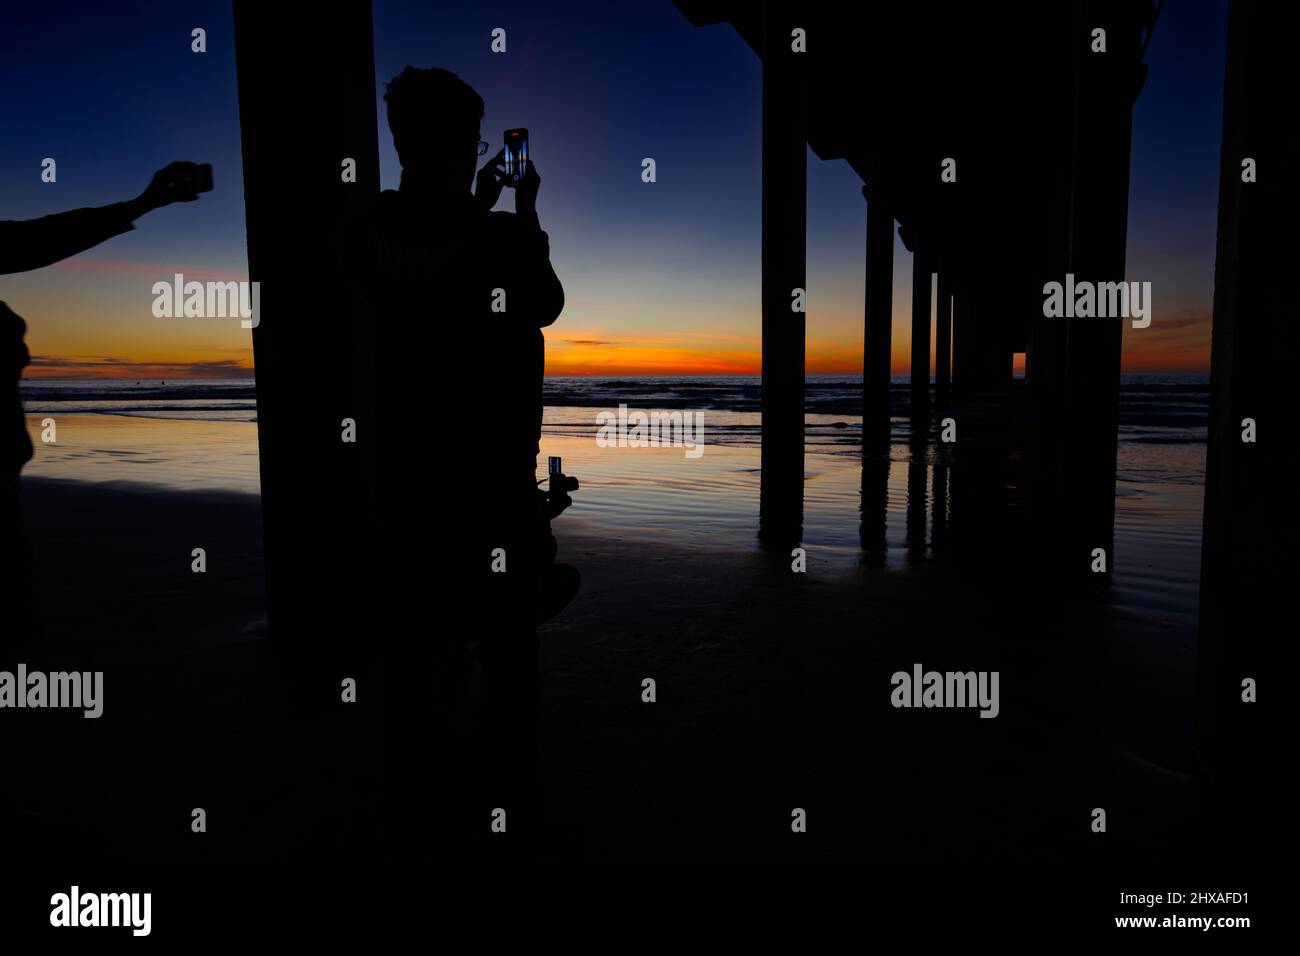 La JOLLA, CALIFORNIA. Febbraio 9, 2021. I visitatori fotografano Scripps Pier a la Jolla, California, al tramonto con cielo arancione e blu. Foto: Contrassegno J. Foto Stock